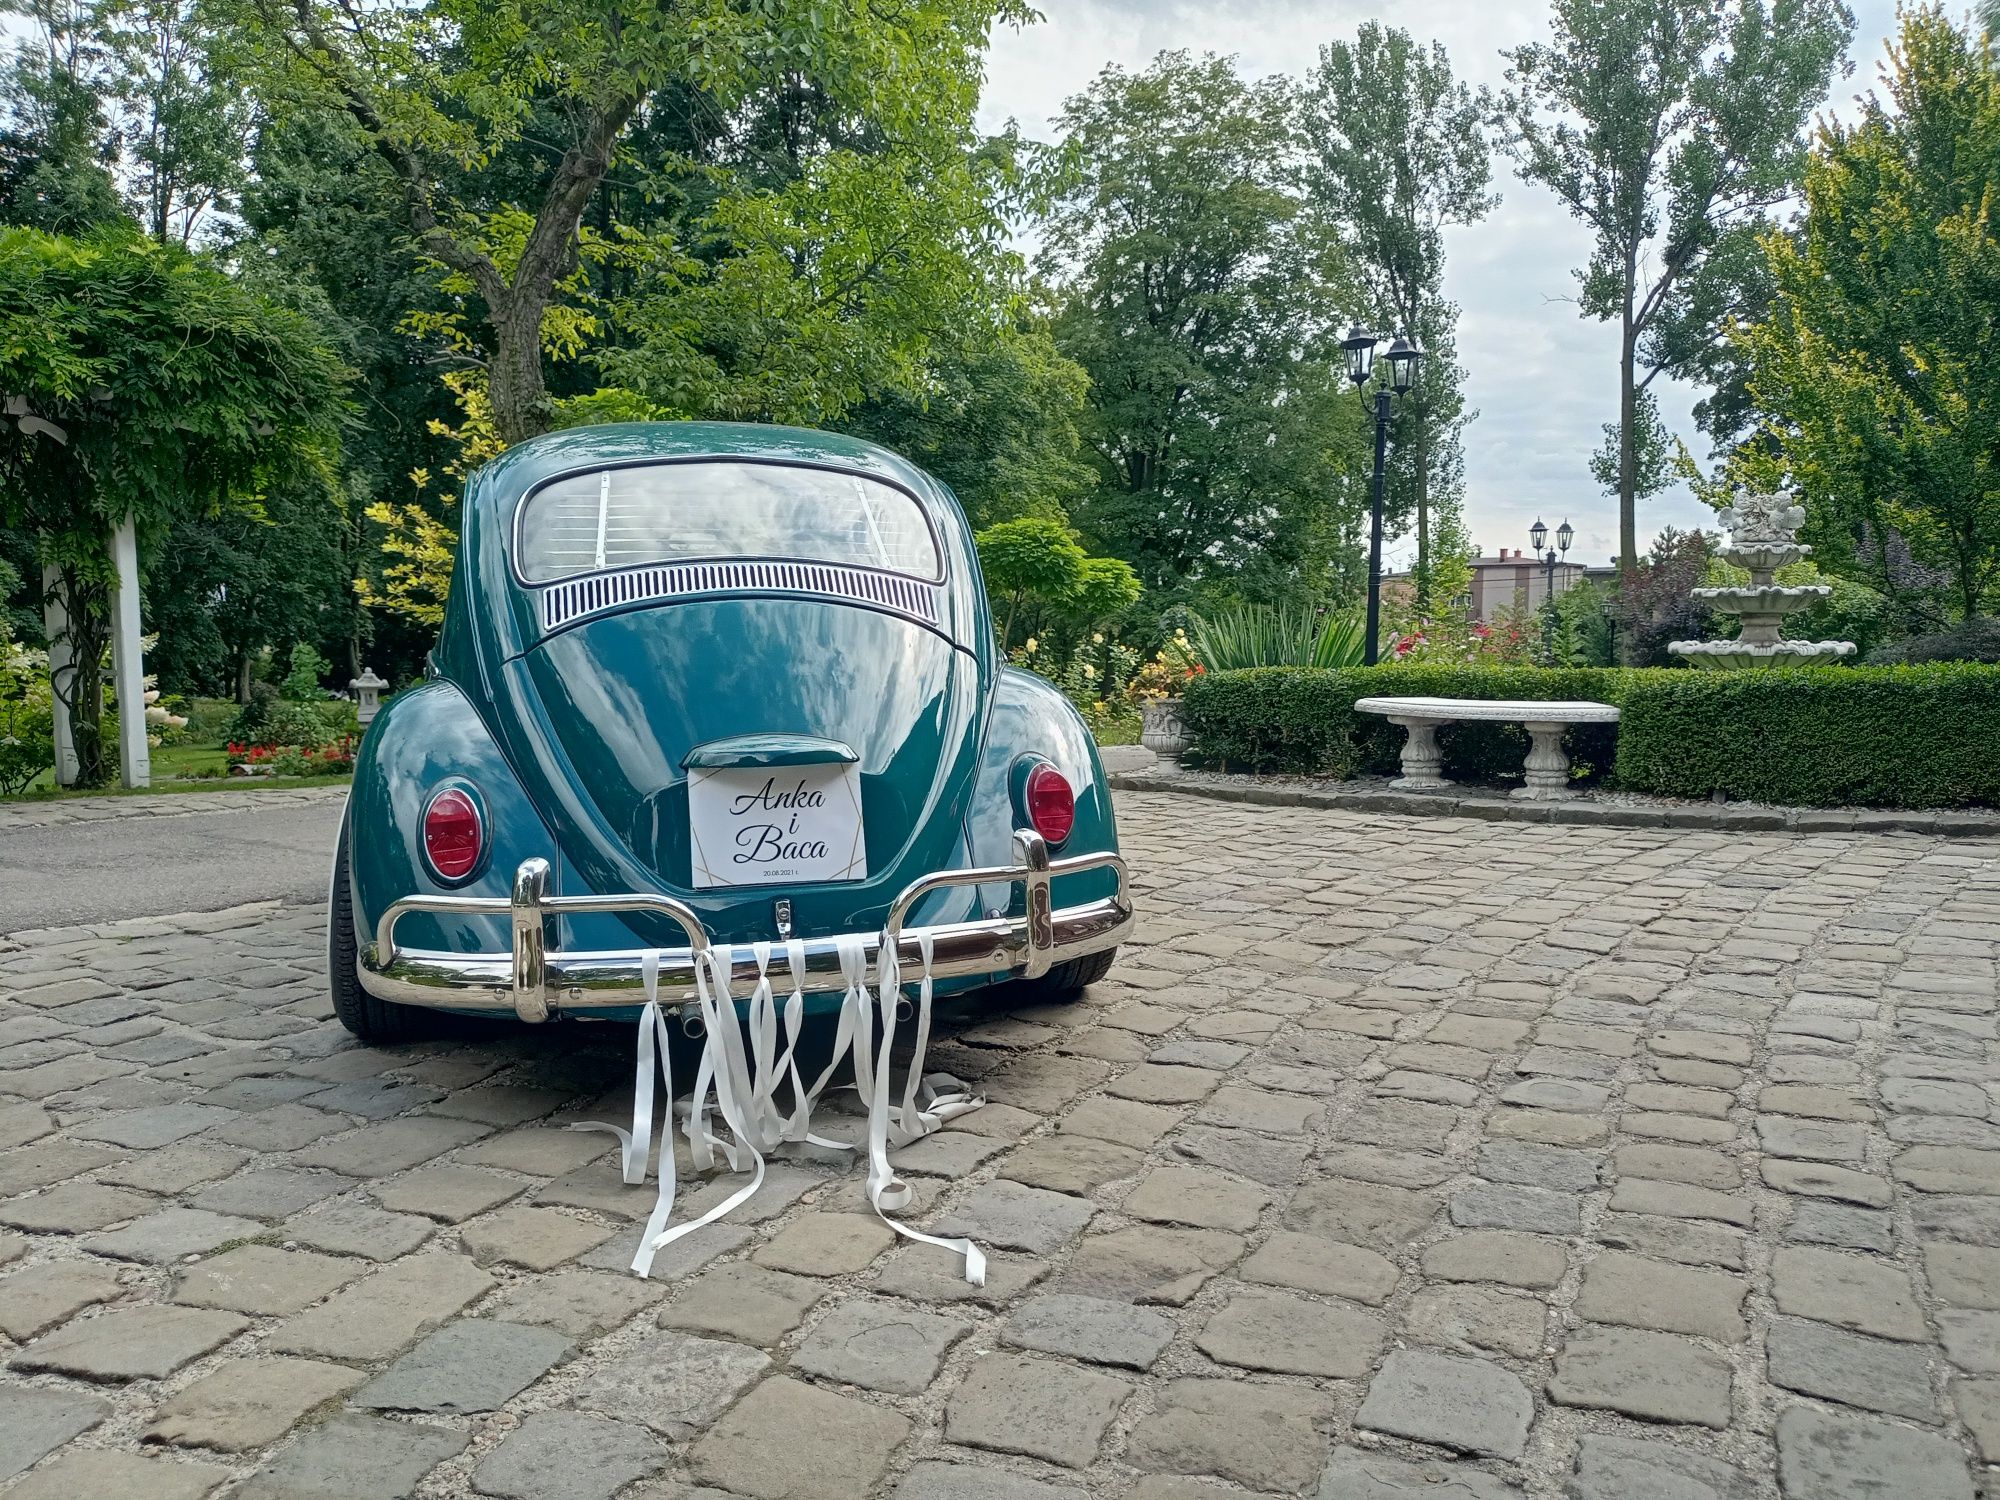 Garbus VW auto do ślubu samochód do ślubu retro zabytek boho  zdjęcia